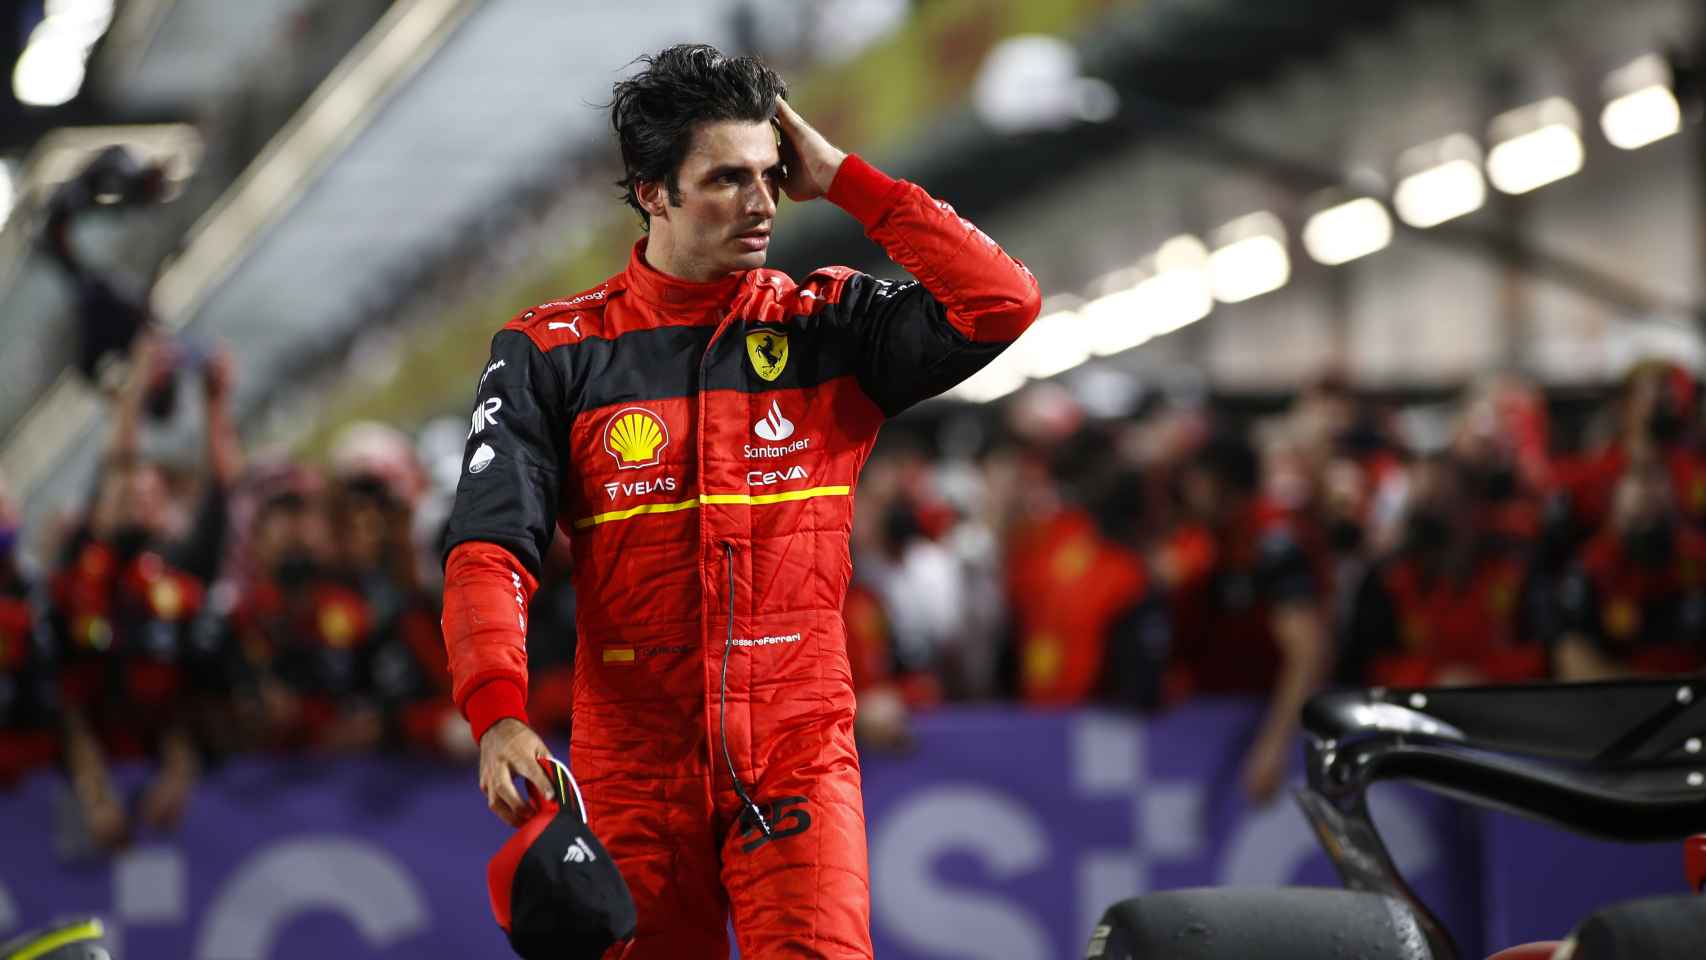 Carlos Sainz en el Gran Premio de Arabia Saudí